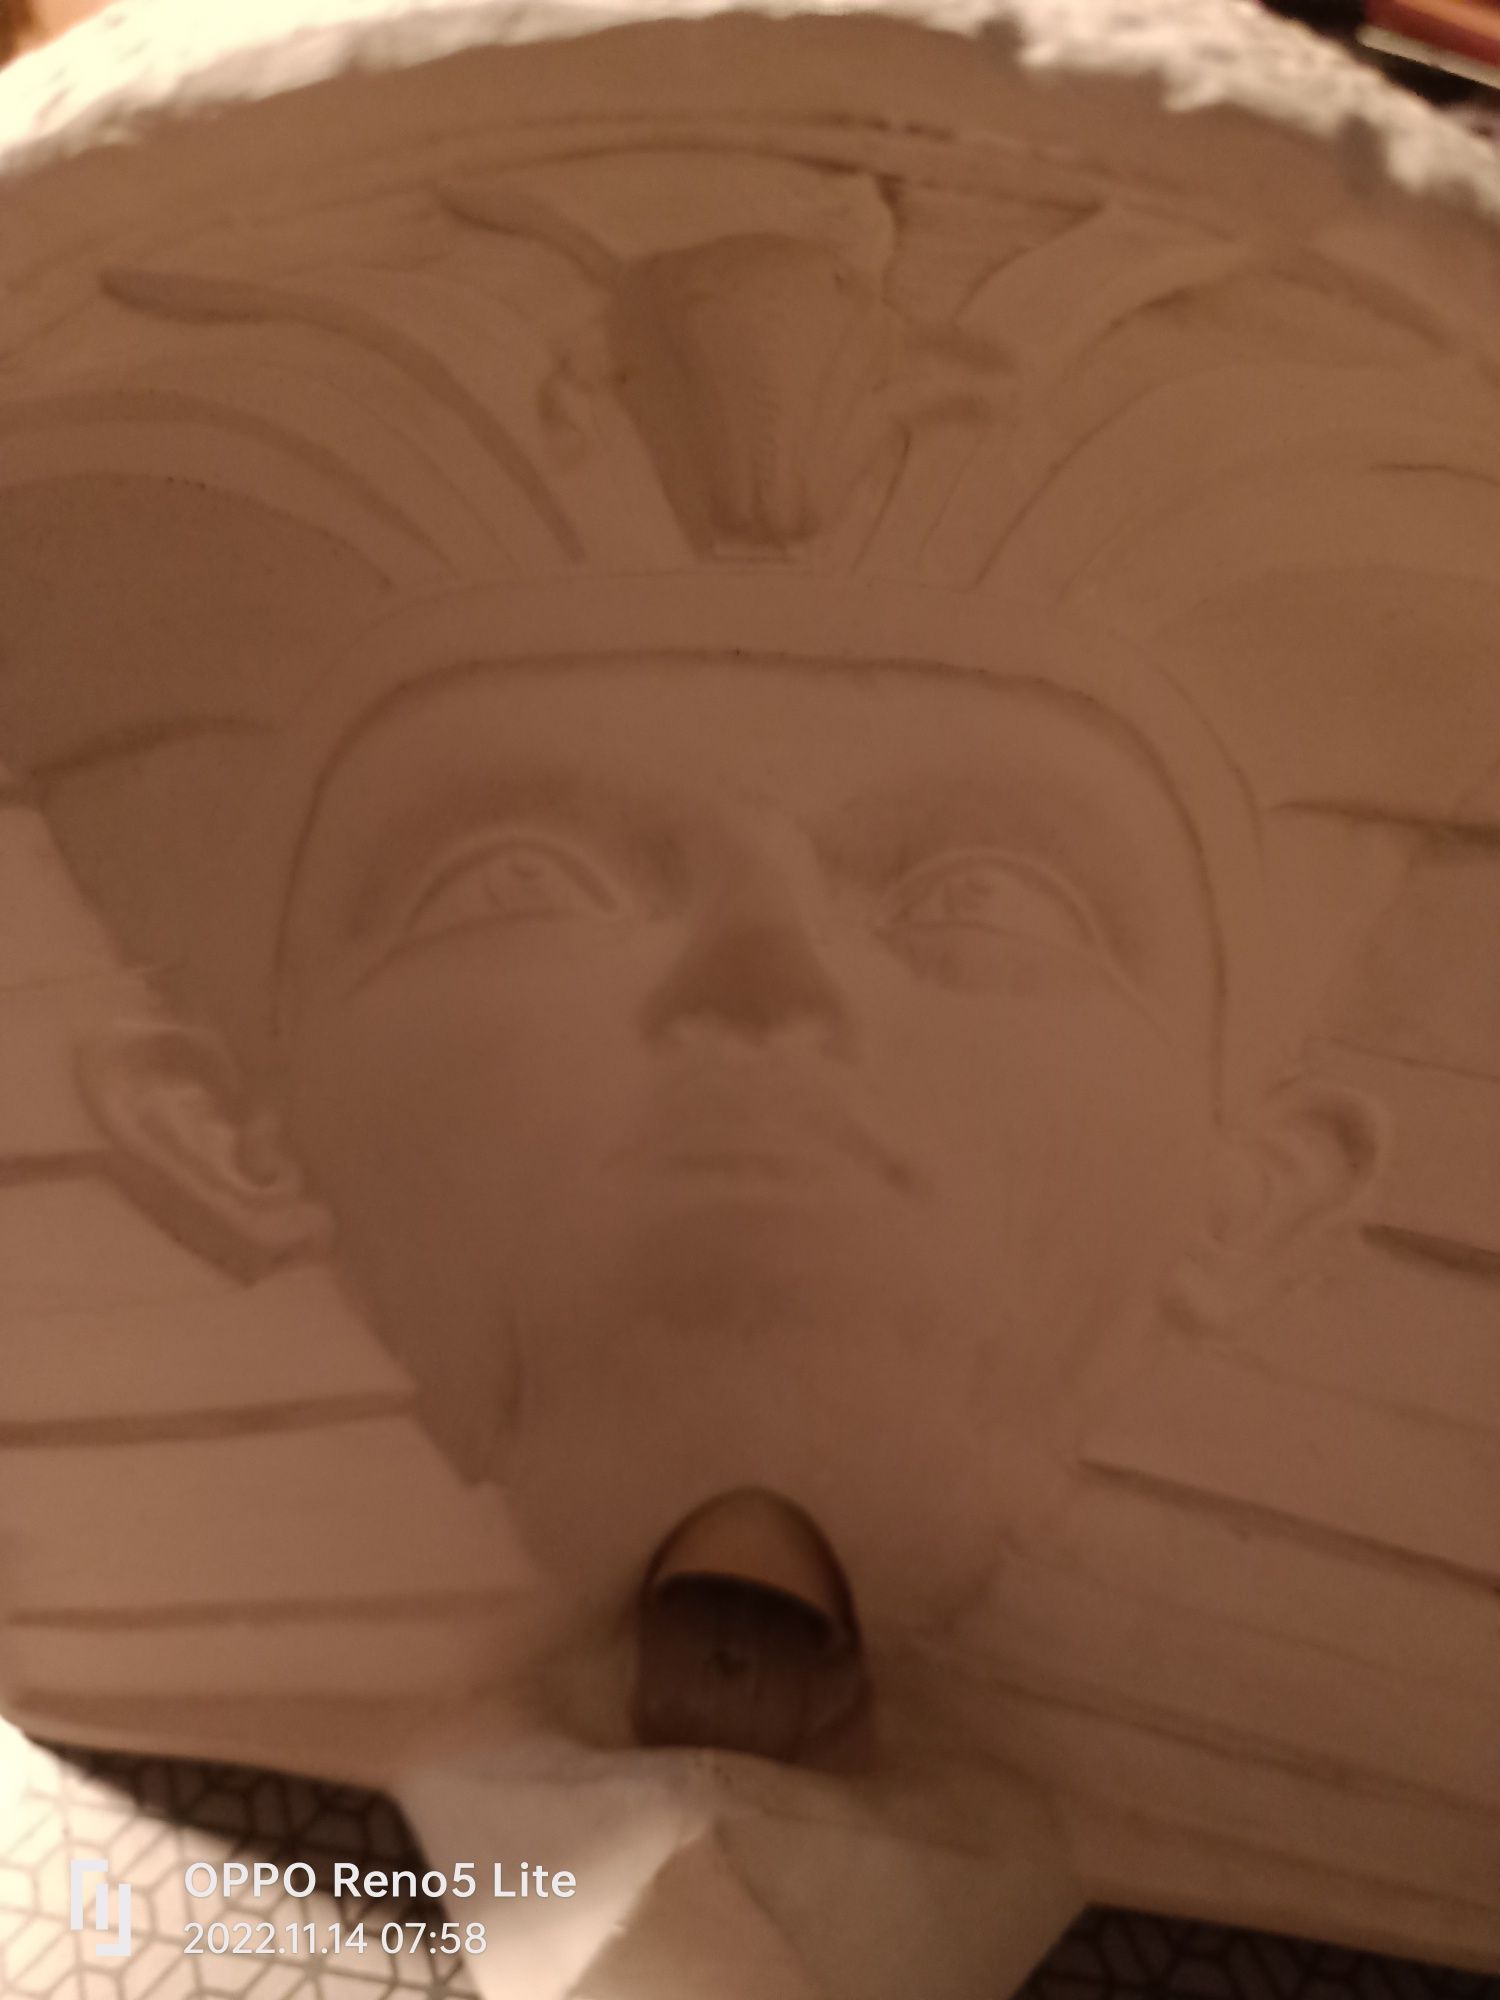 Statueta Sfinx,vintage,iluzie optica3D.Cadou,,veioza,ornament,casa,gra